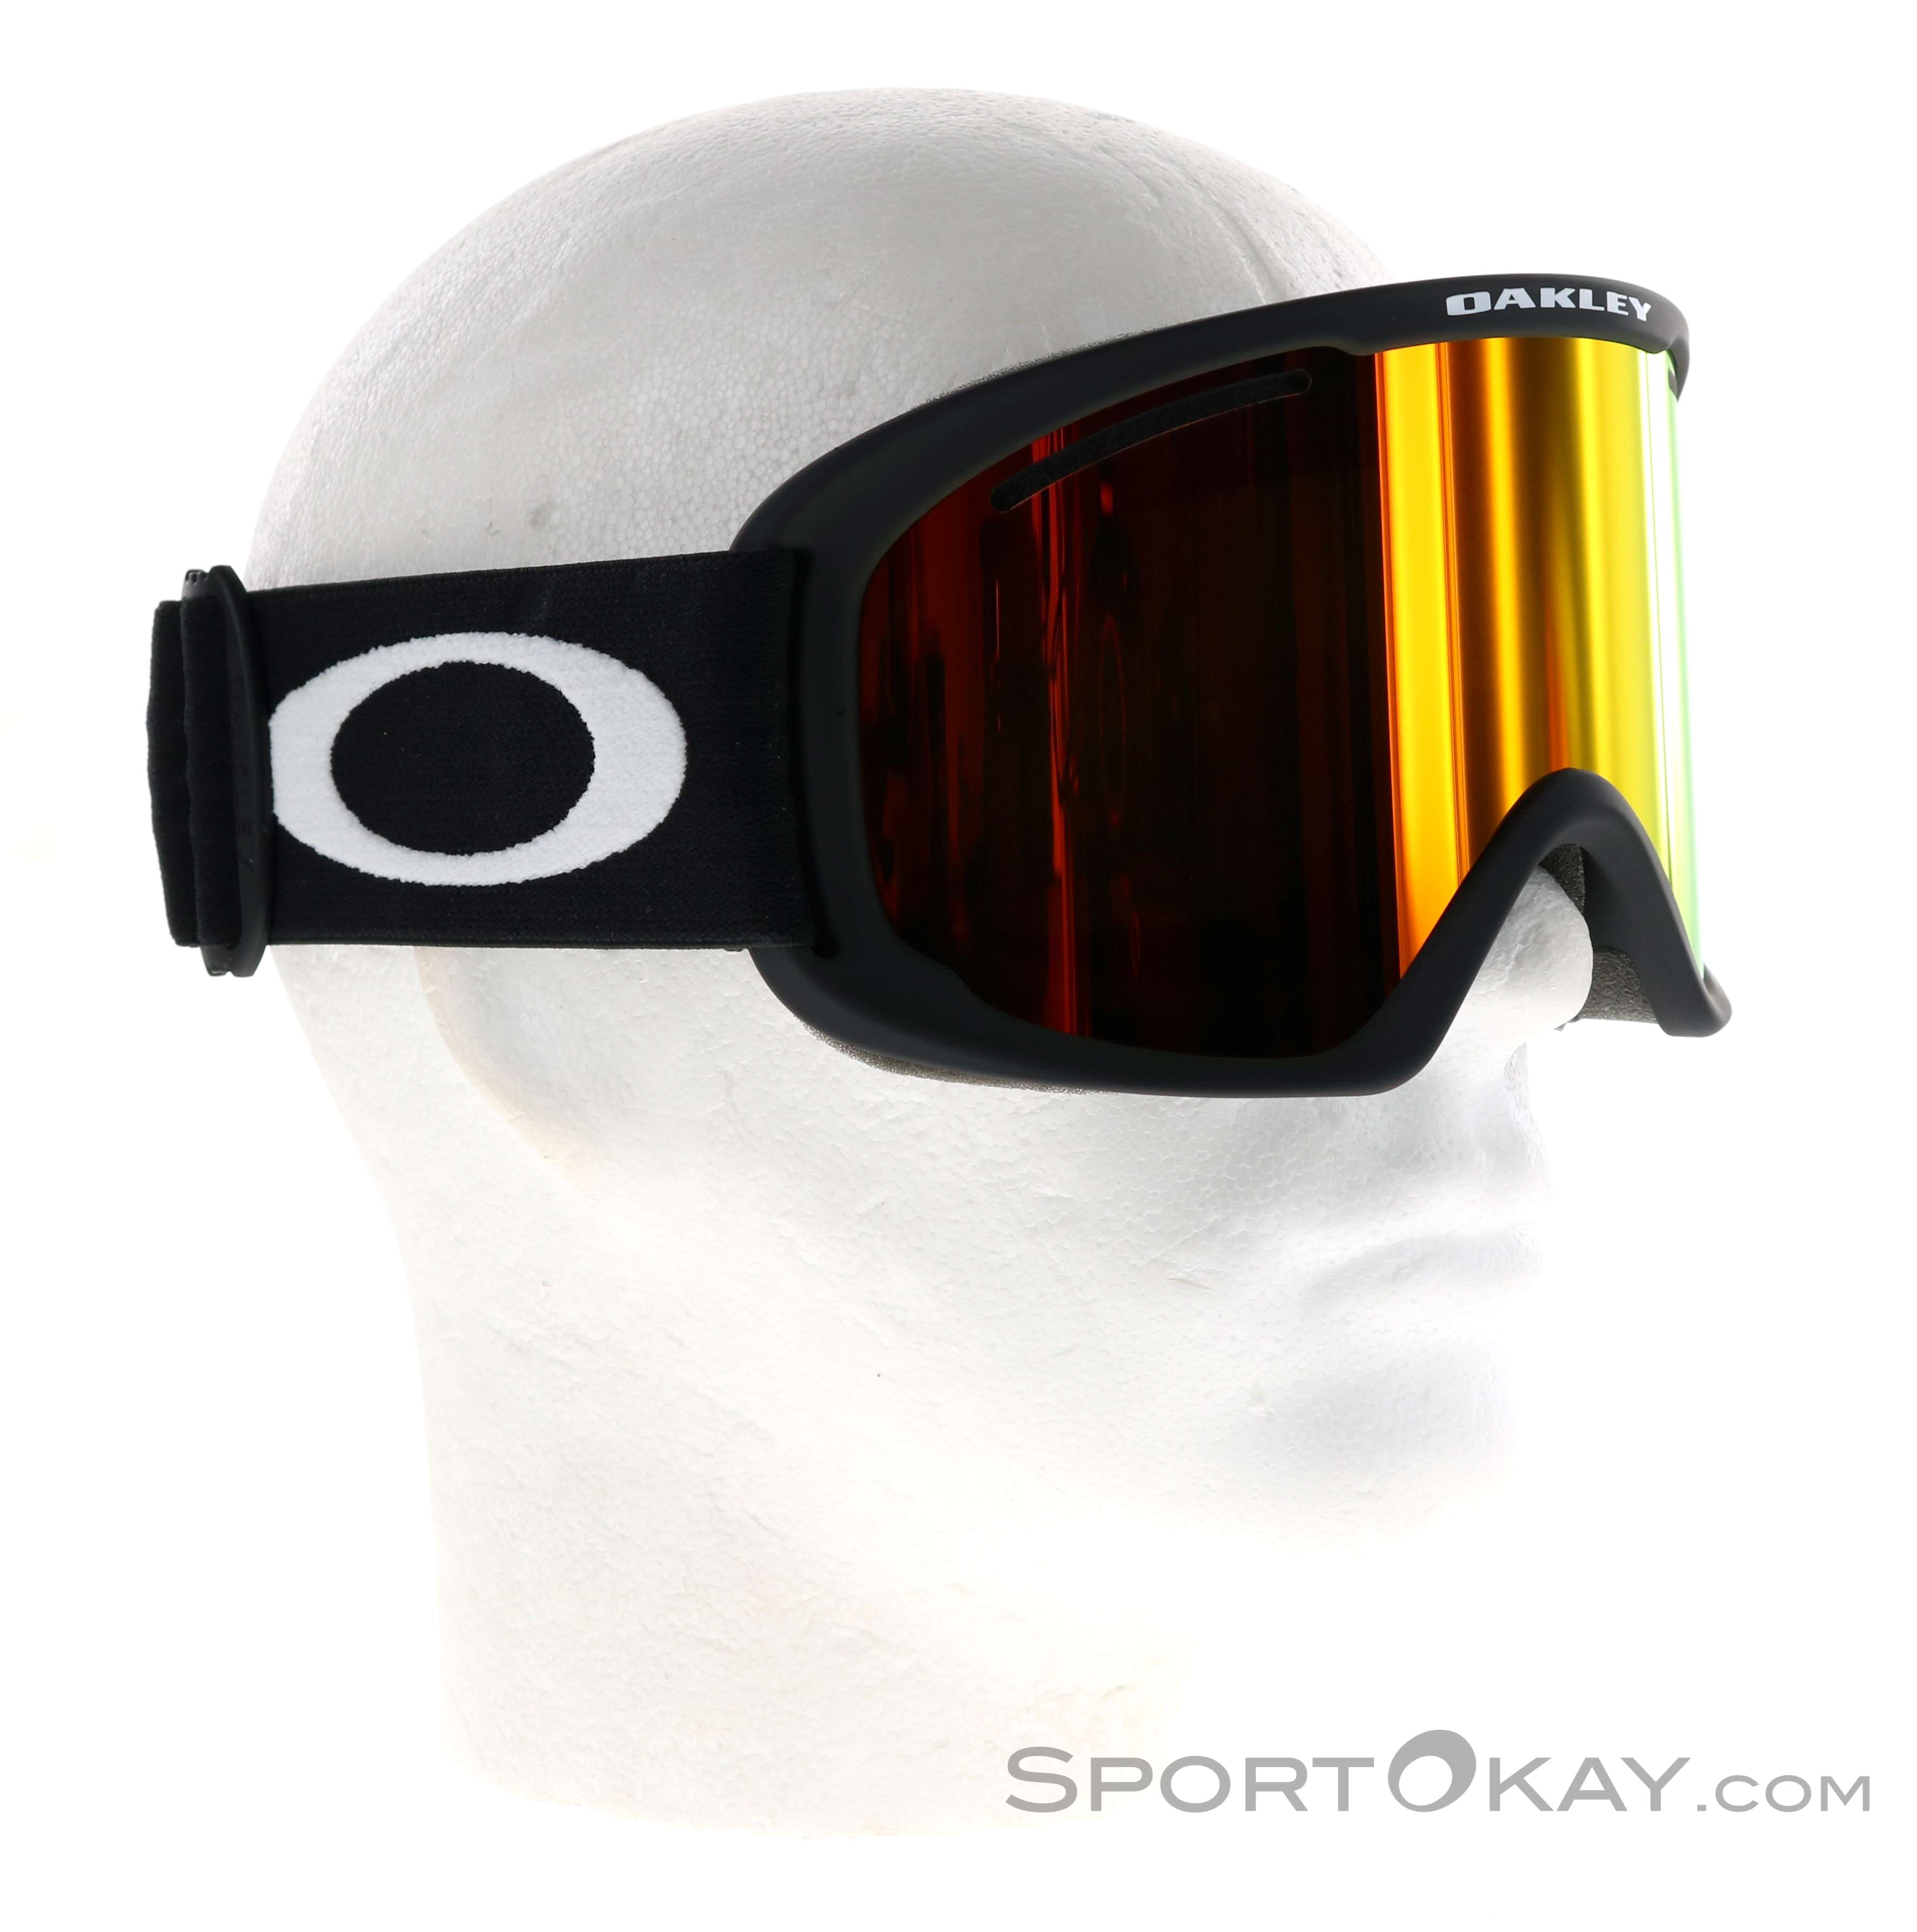 Oakley O Frame 2.0 Pro XL Ski Goggles - Ski Googles - Glasses - Ski Touring  - All